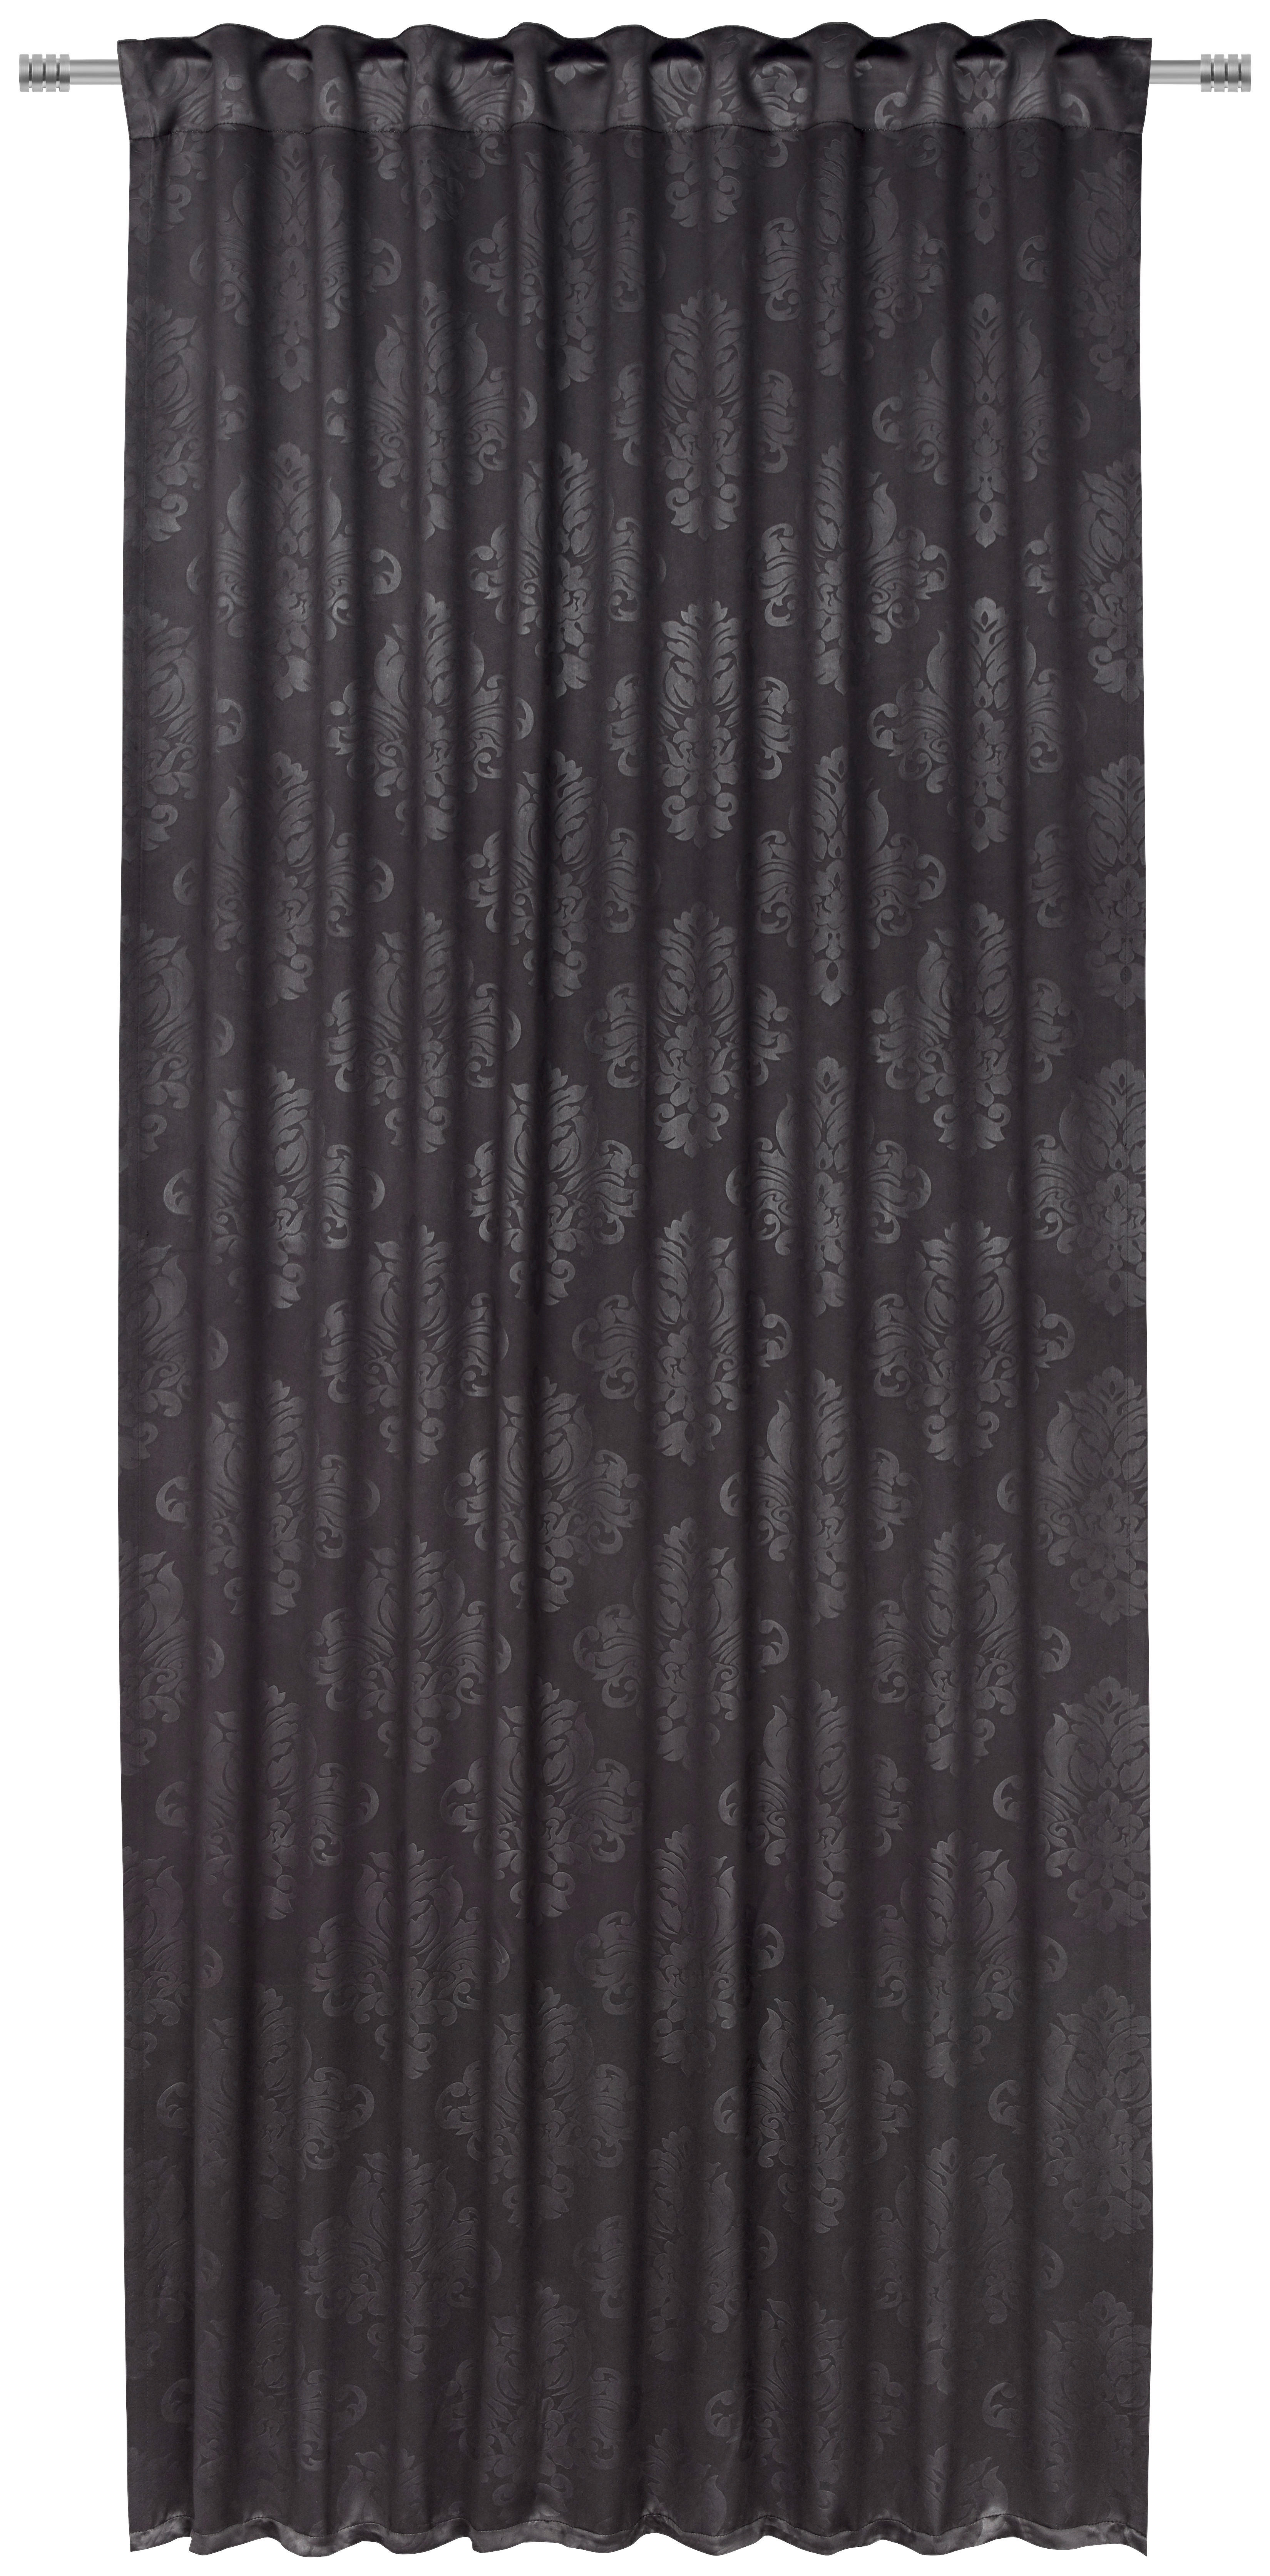 FERTIGVORHANG VIENNA black-out (lichtundurchlässig) 135/245 cm   - Schwarz, KONVENTIONELL, Textil (135/245cm) - Boxxx